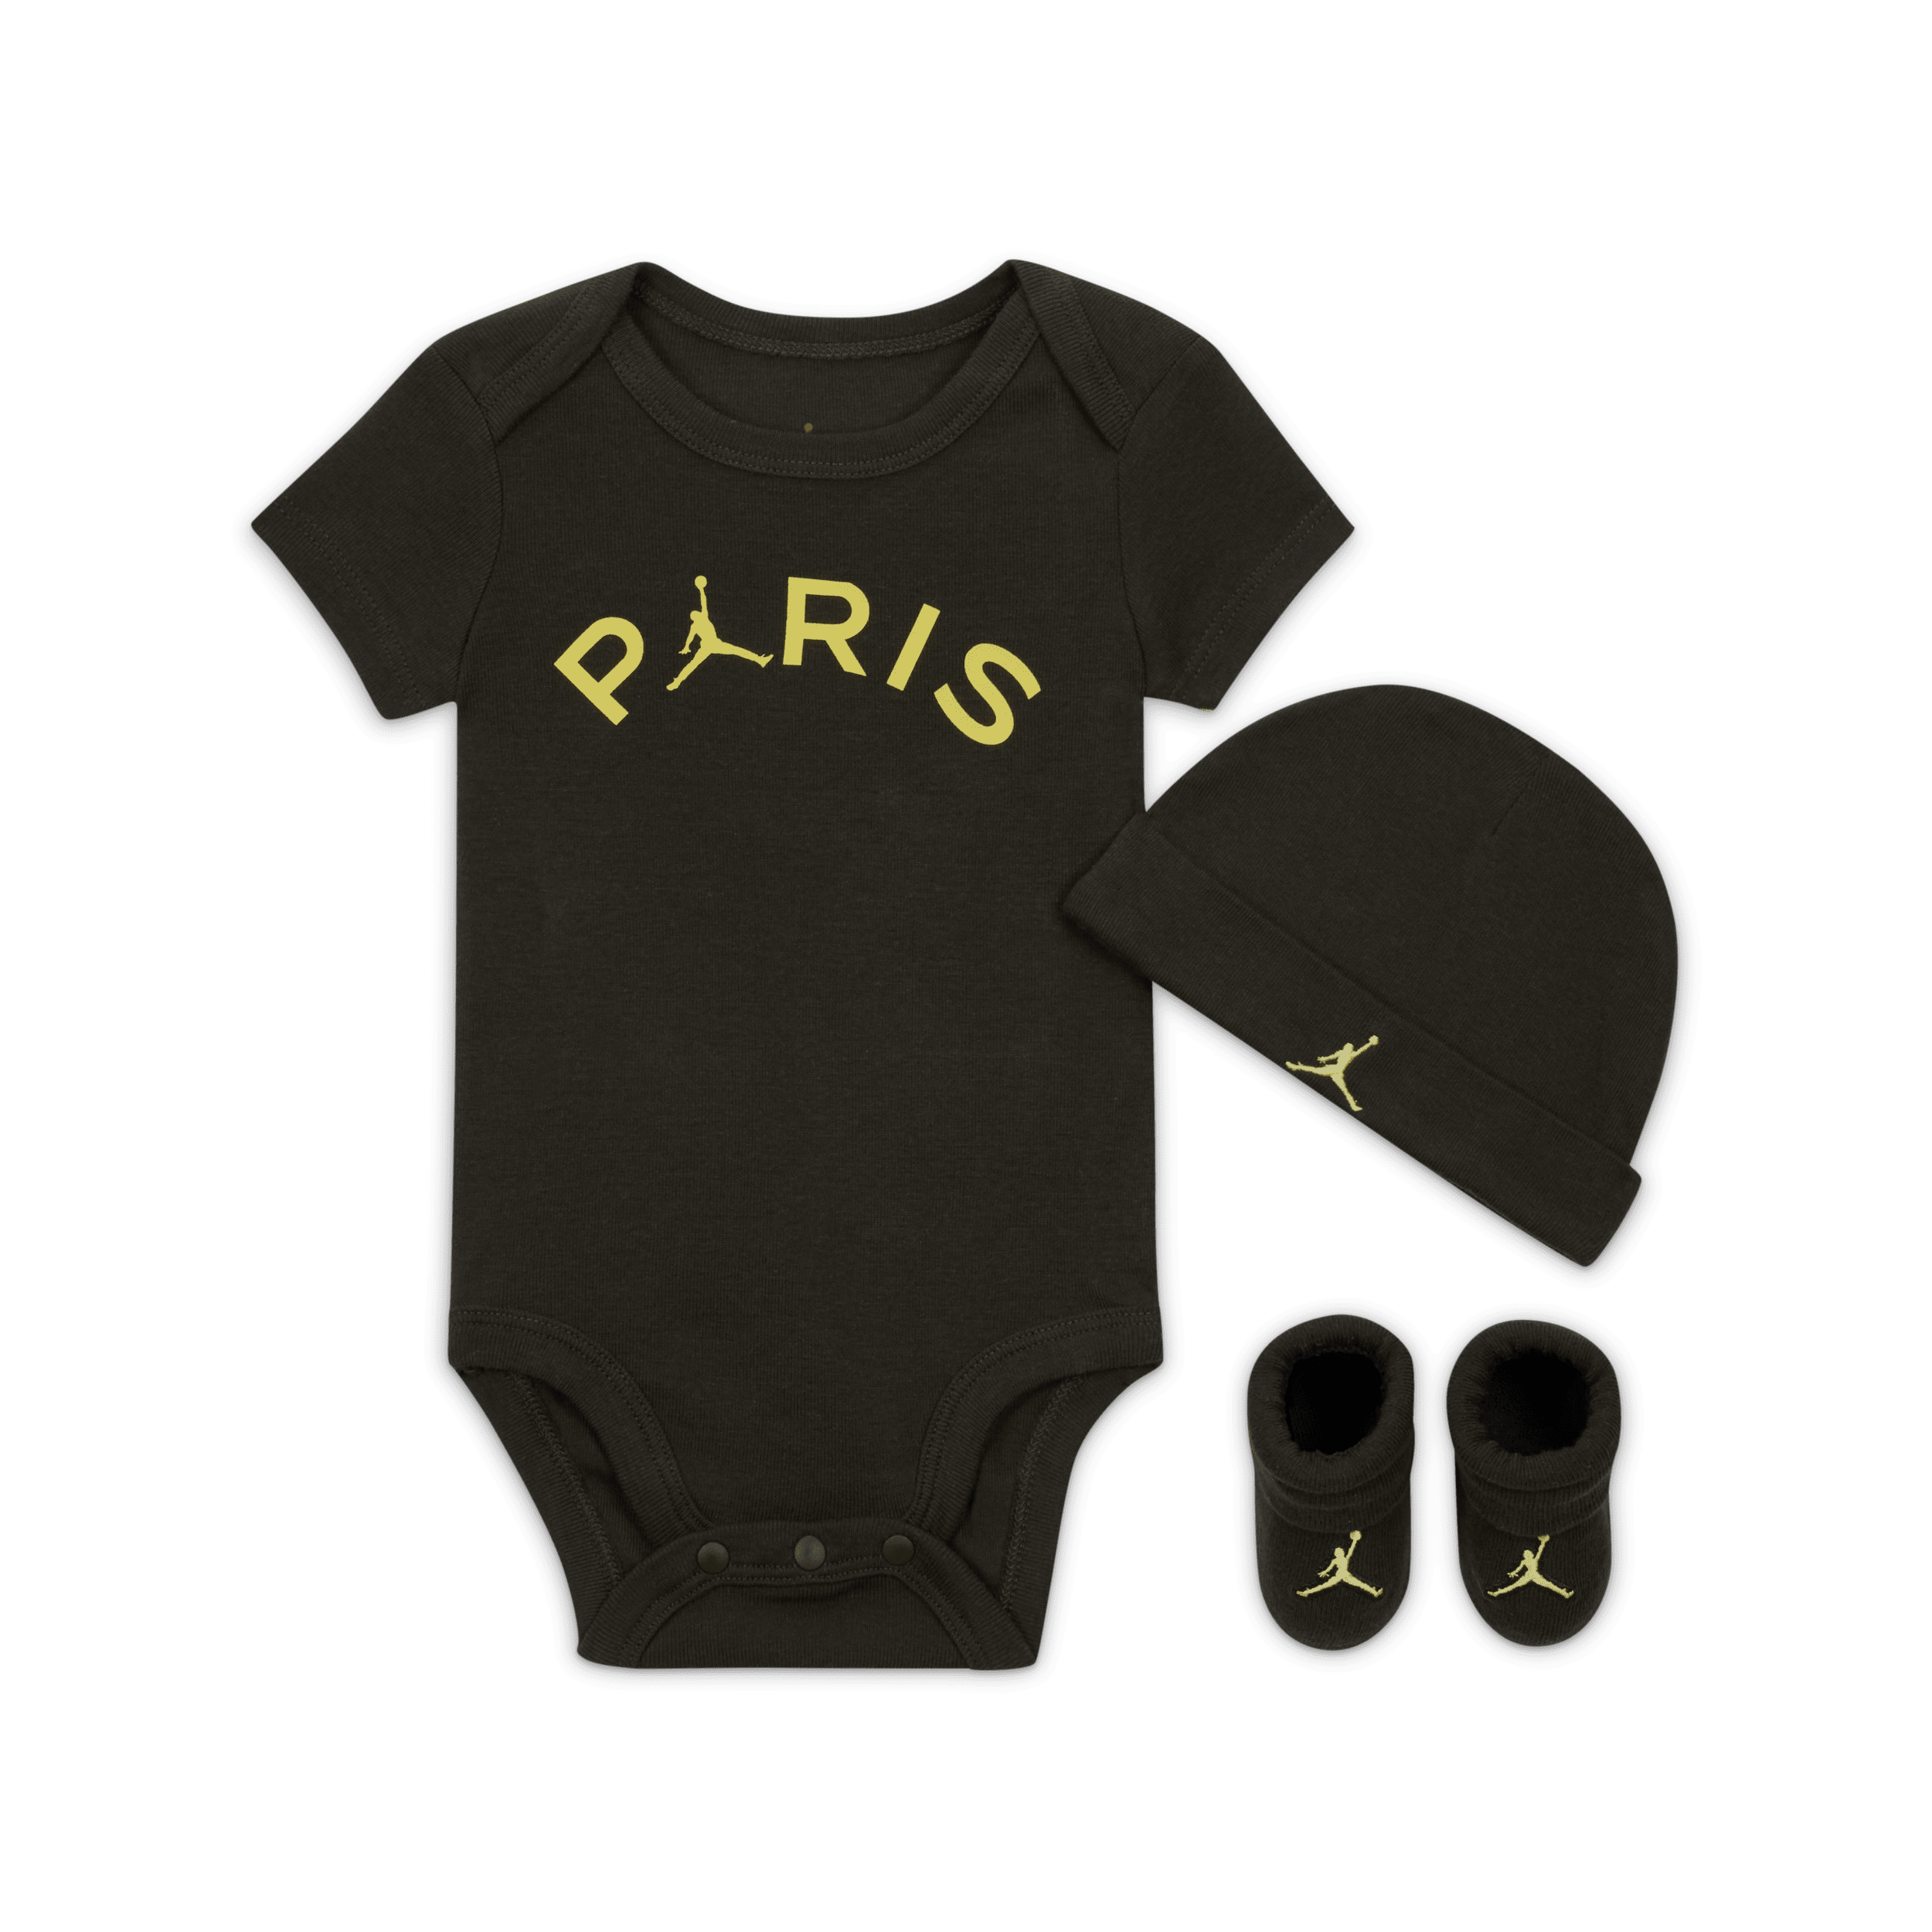 Jordan Paris Saint-Germain driedelige romperset voor baby's (0-9 maanden) - Groen